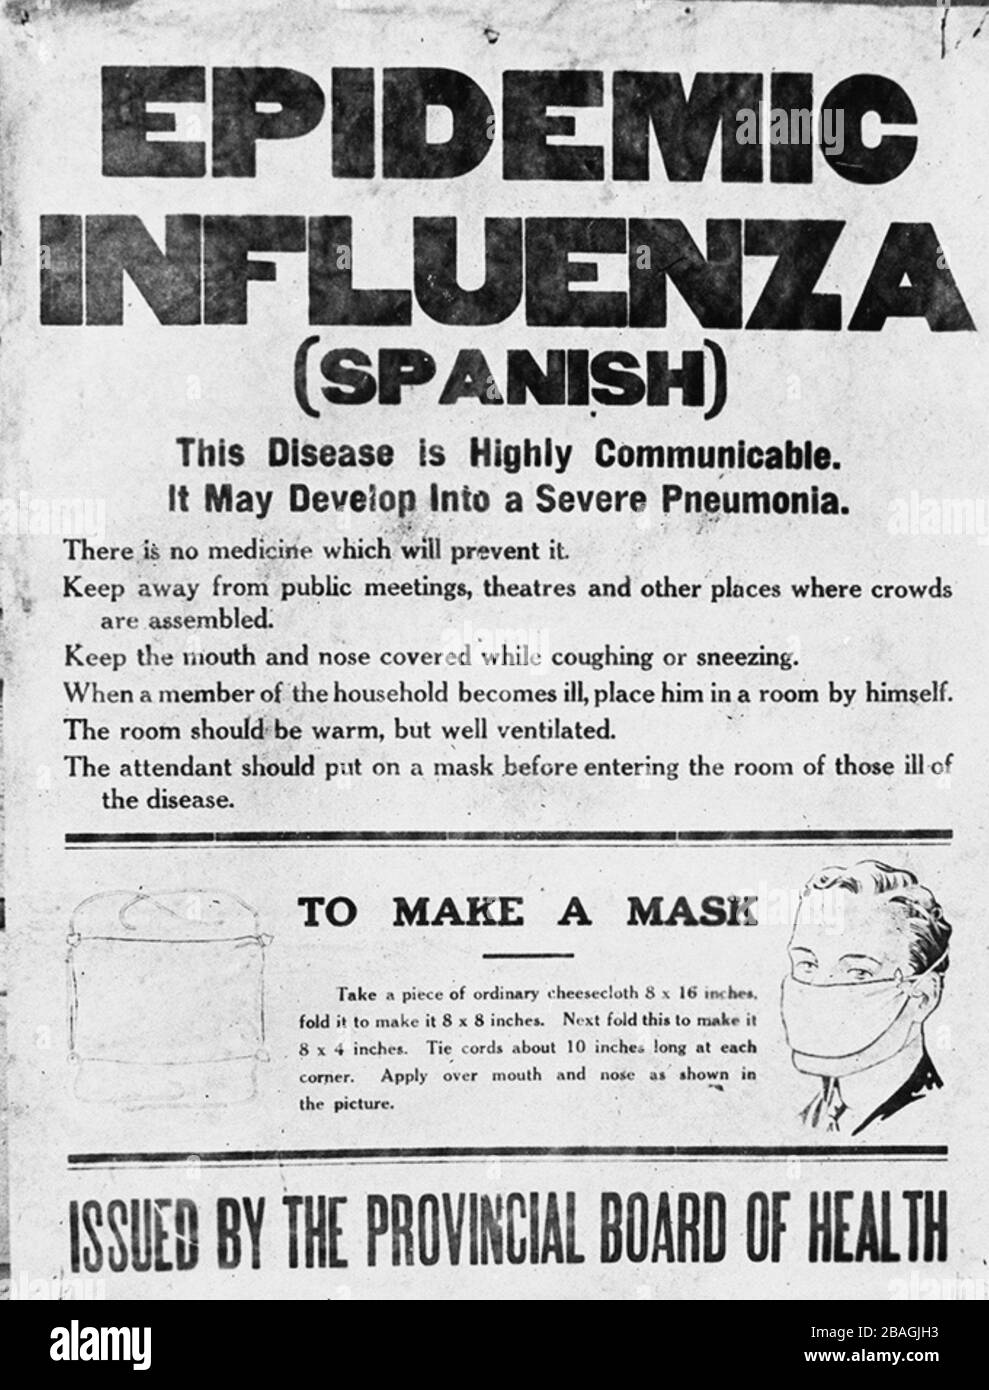 spanisches-grippeplakat-plakat-des-provinzausschusses-fur-gesundheit-in-alberta-das-die-offentlichkeit-auf-die-grippeepidemie-von-1918-aufmerksam-macht-das-poster-informiert-uber-die-spanische-grippe-und-gibt-anweisungen-wie-man-eine-maske-anfertigen-kann-2bagjh3.jpg